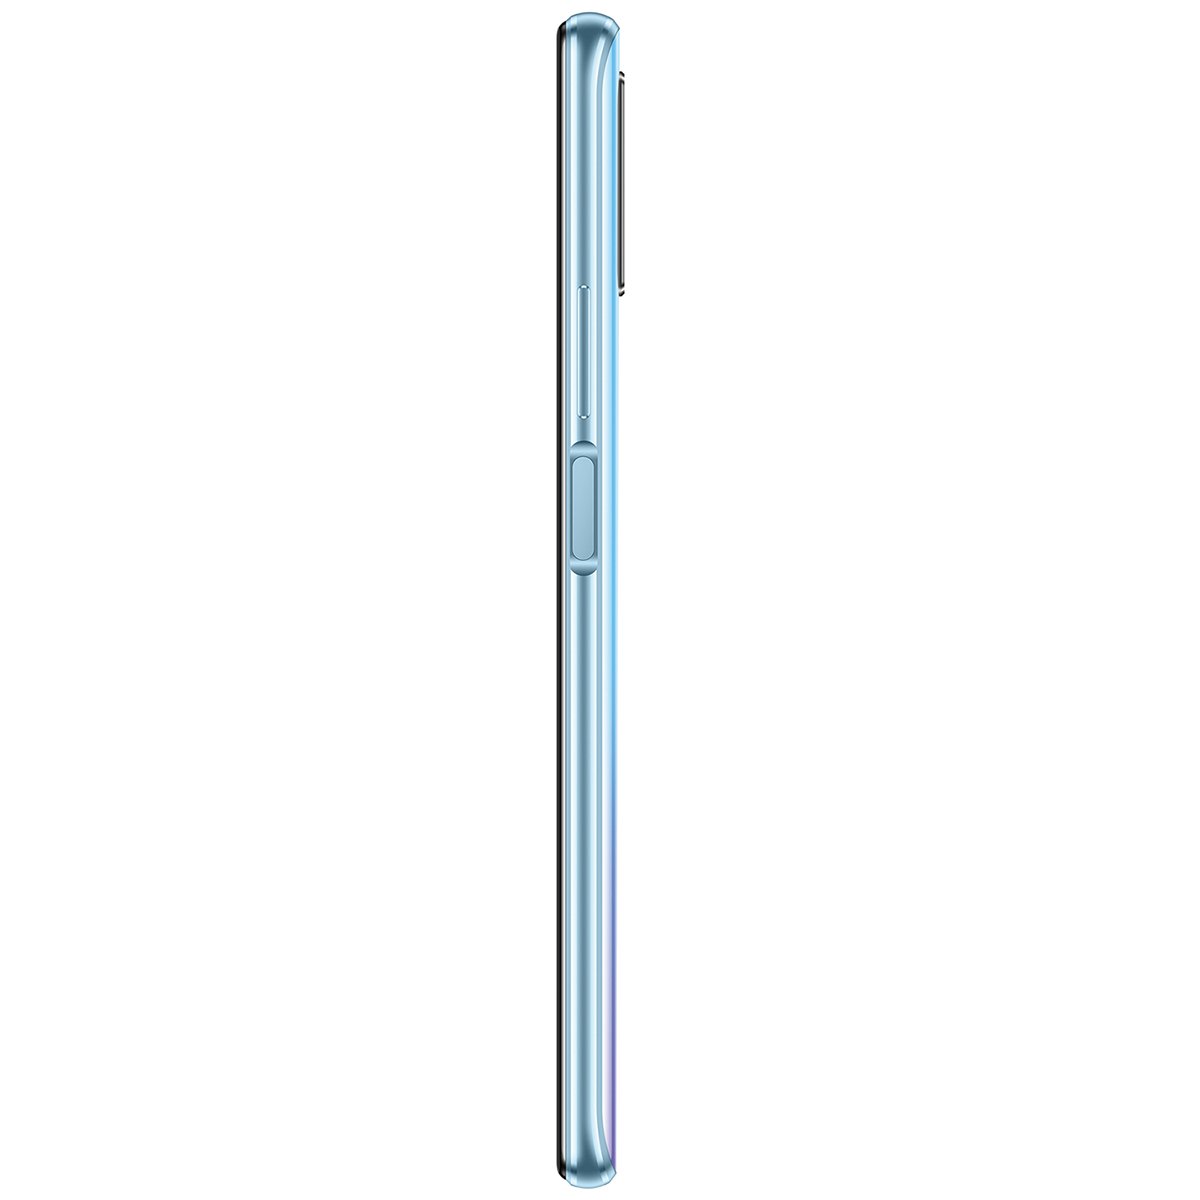 Celular Huawei Y9S Stk-Lx3 Color Azul R9 (Telcel)